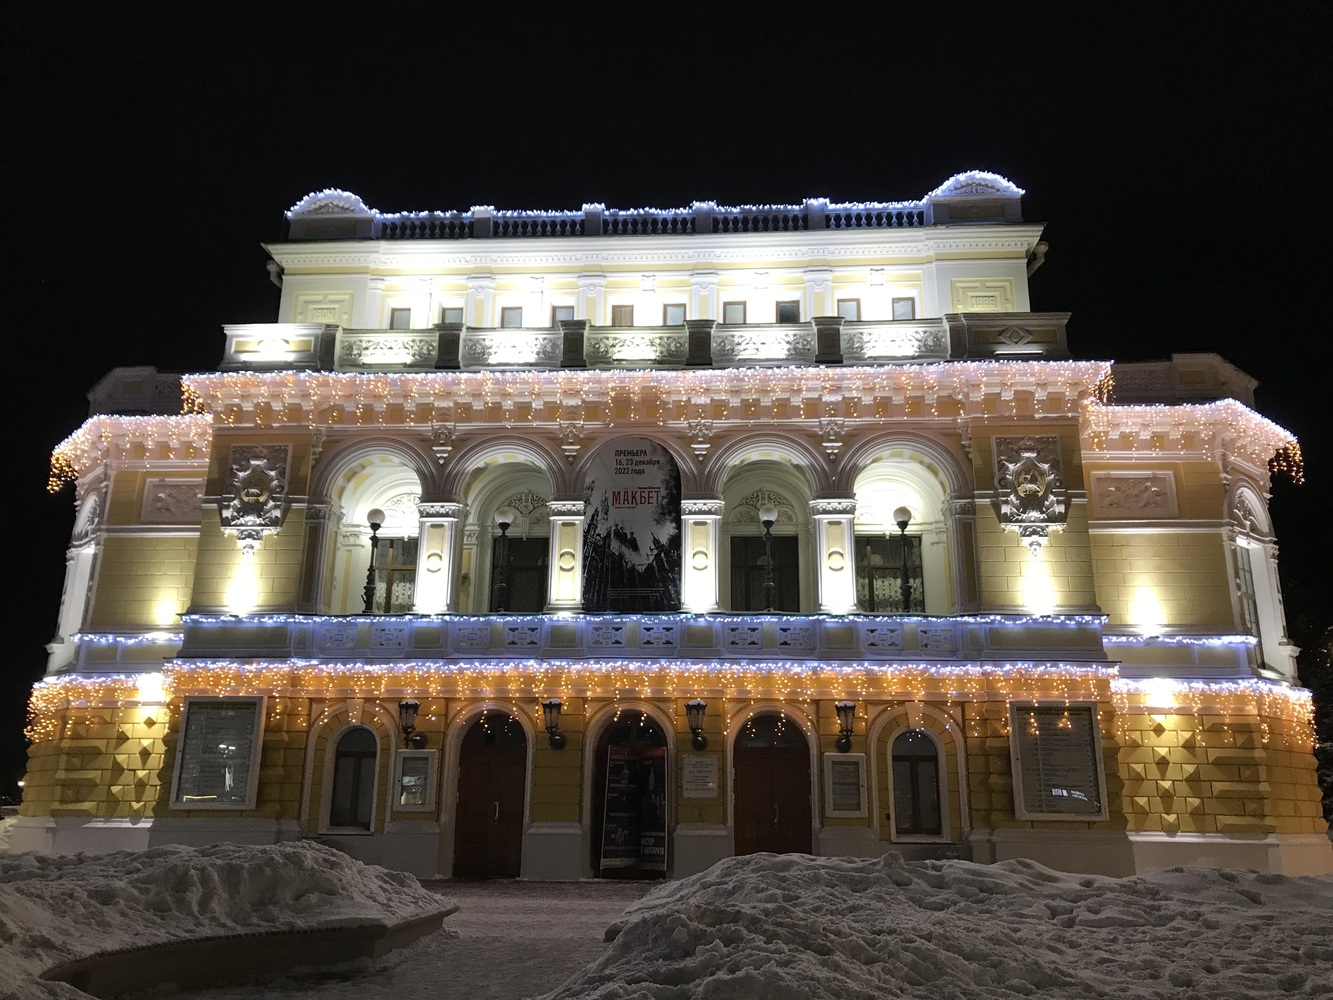 Новогодний Нижний Новгород: яркие кадры зимнего города